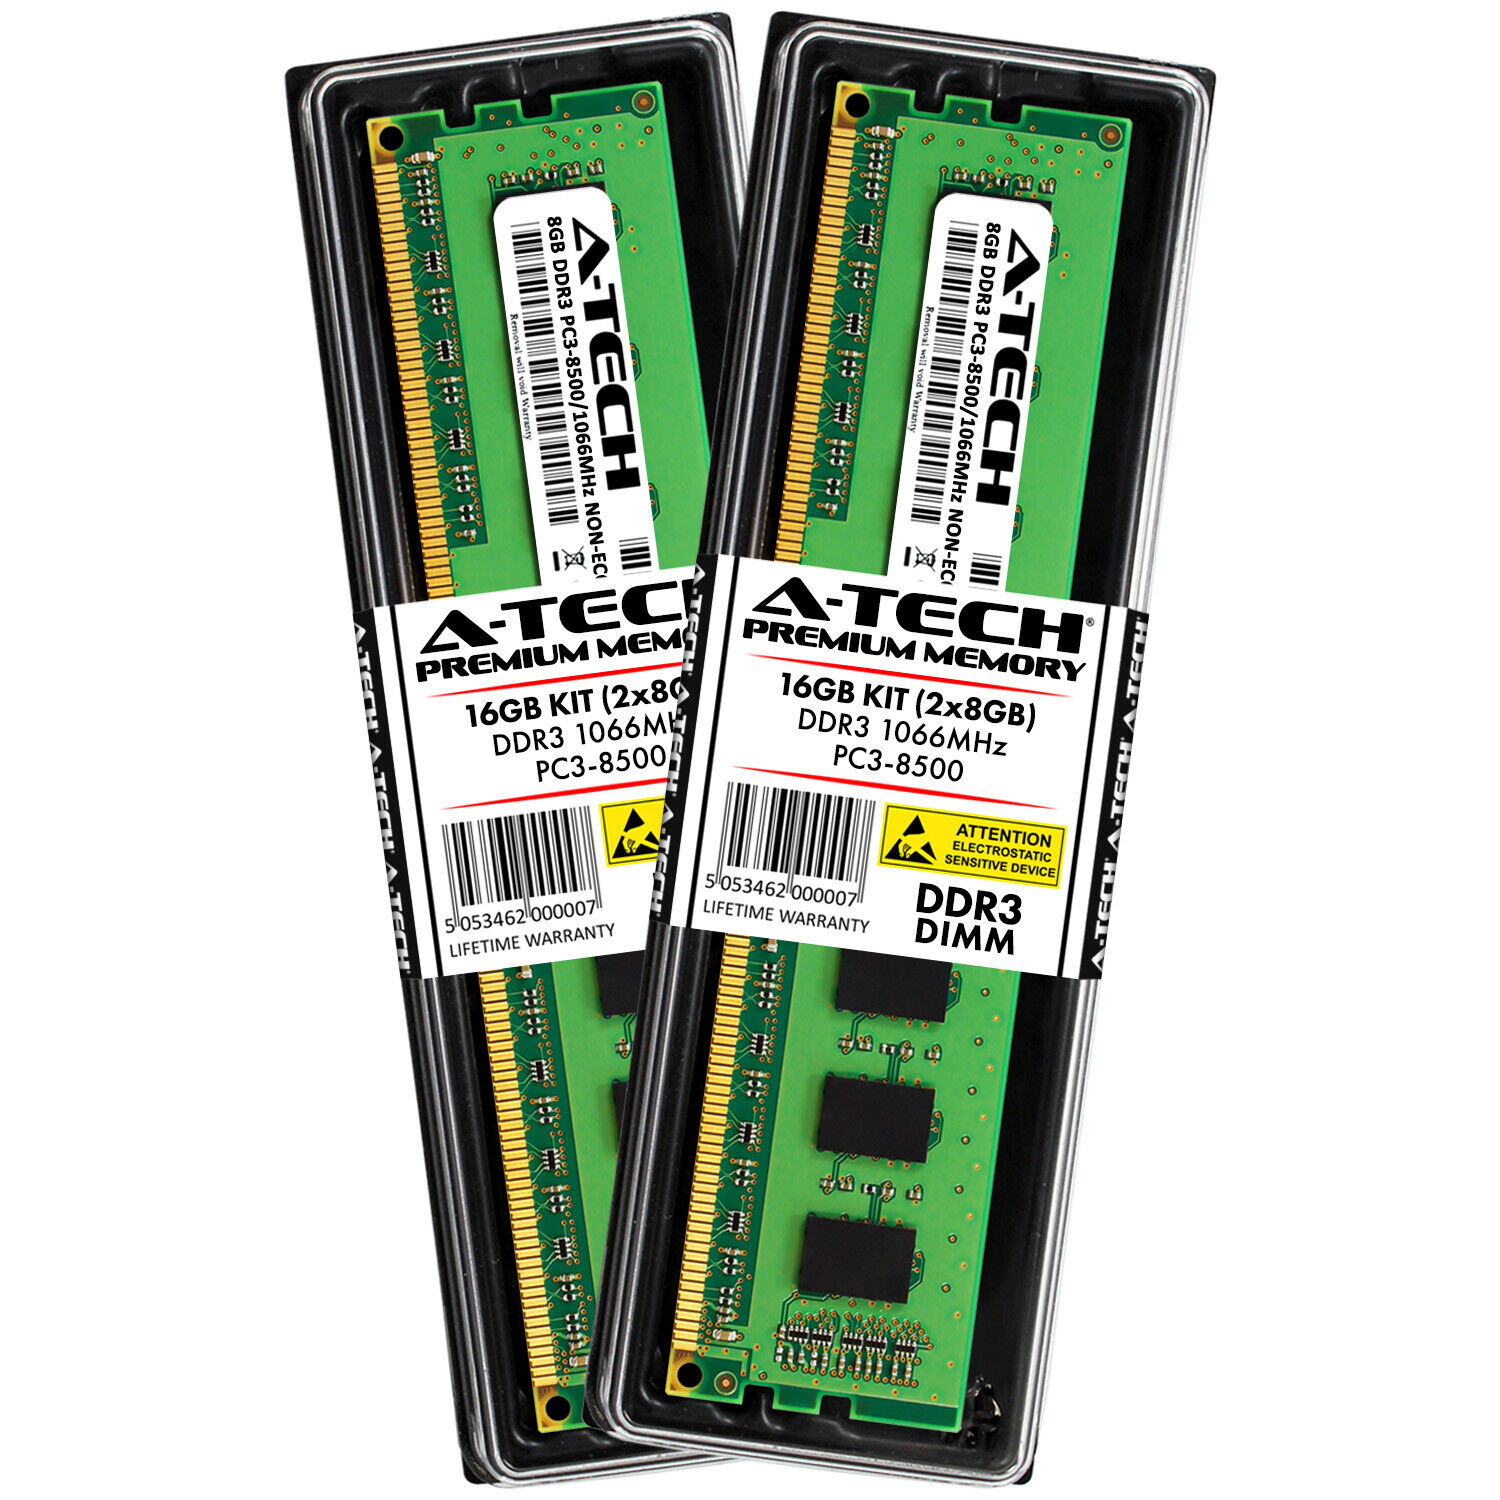 16GB KIT 2 x 8GB DIMM DDR3 NON-ECC PC3-8500 1066MHz 1066 MHz DDR-3 8G Ram Memory